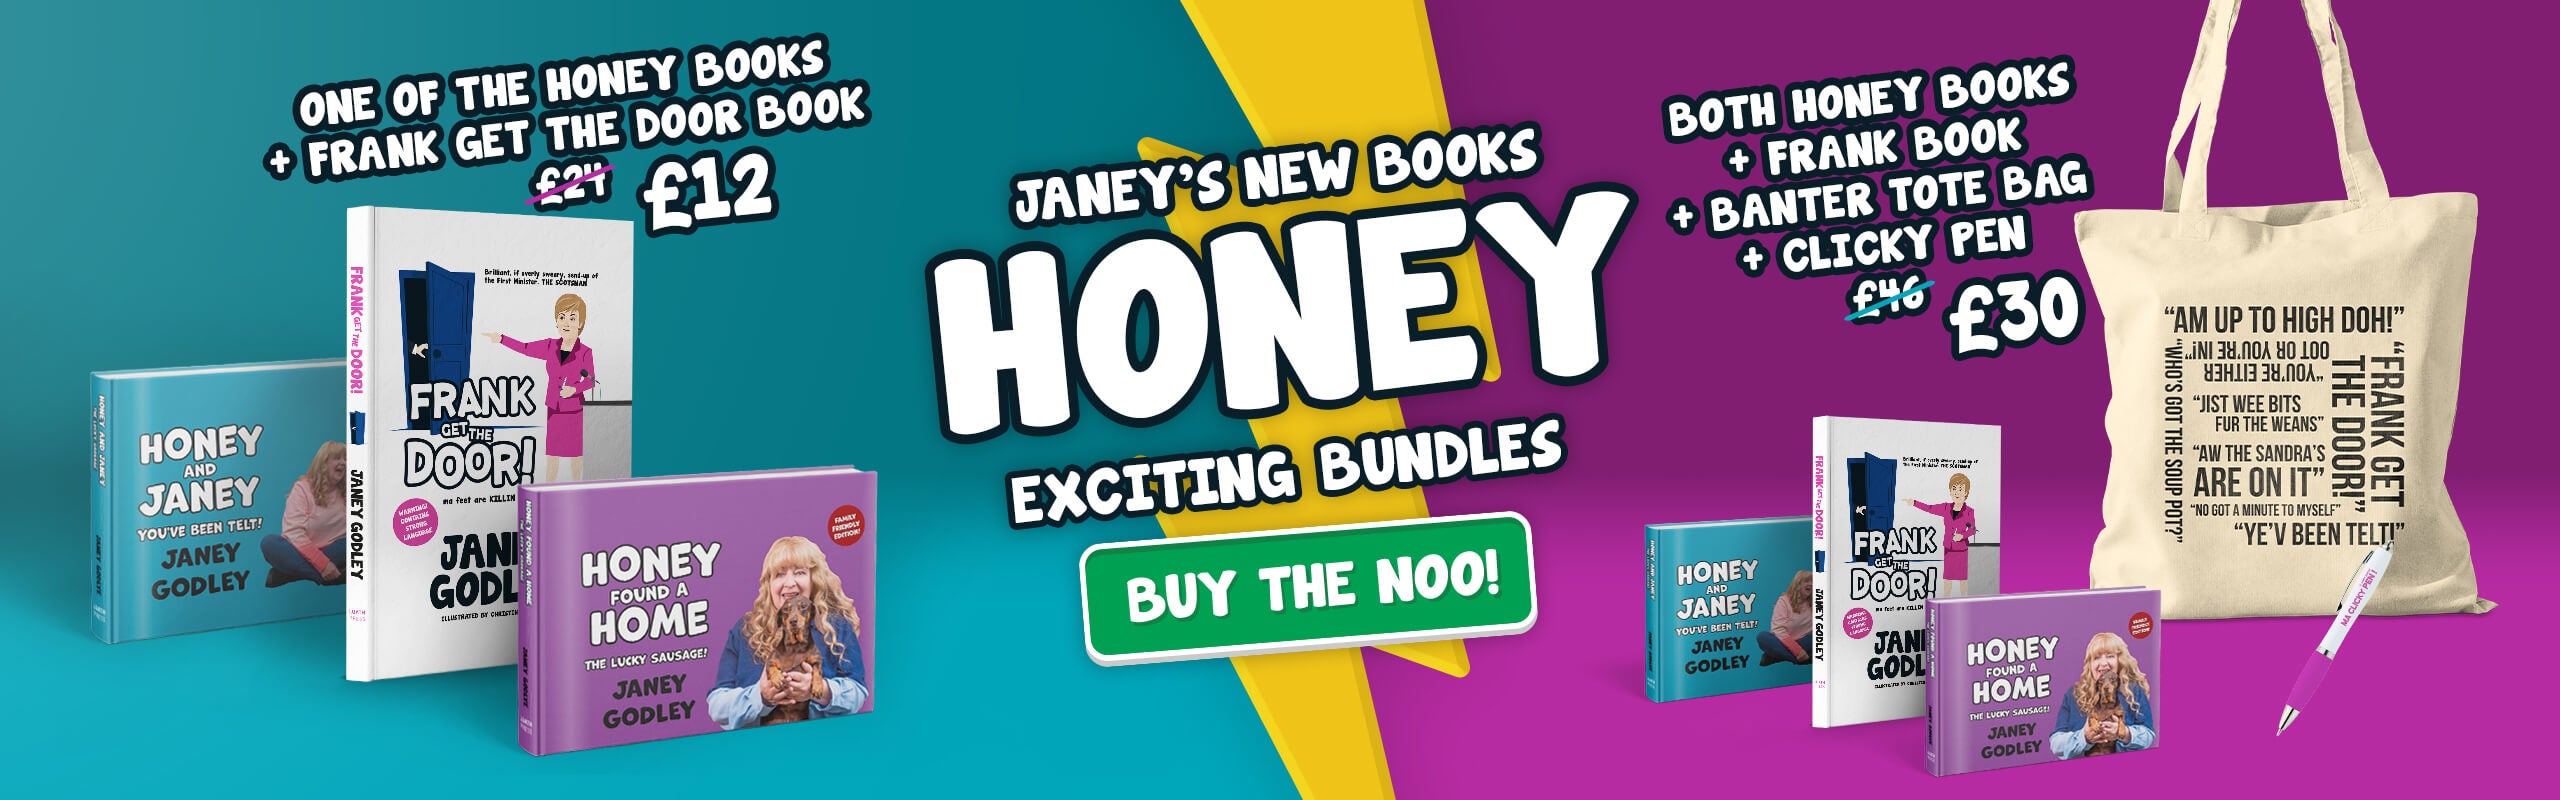 Janey Godley Honey + Frank Get The Door Book Bundles